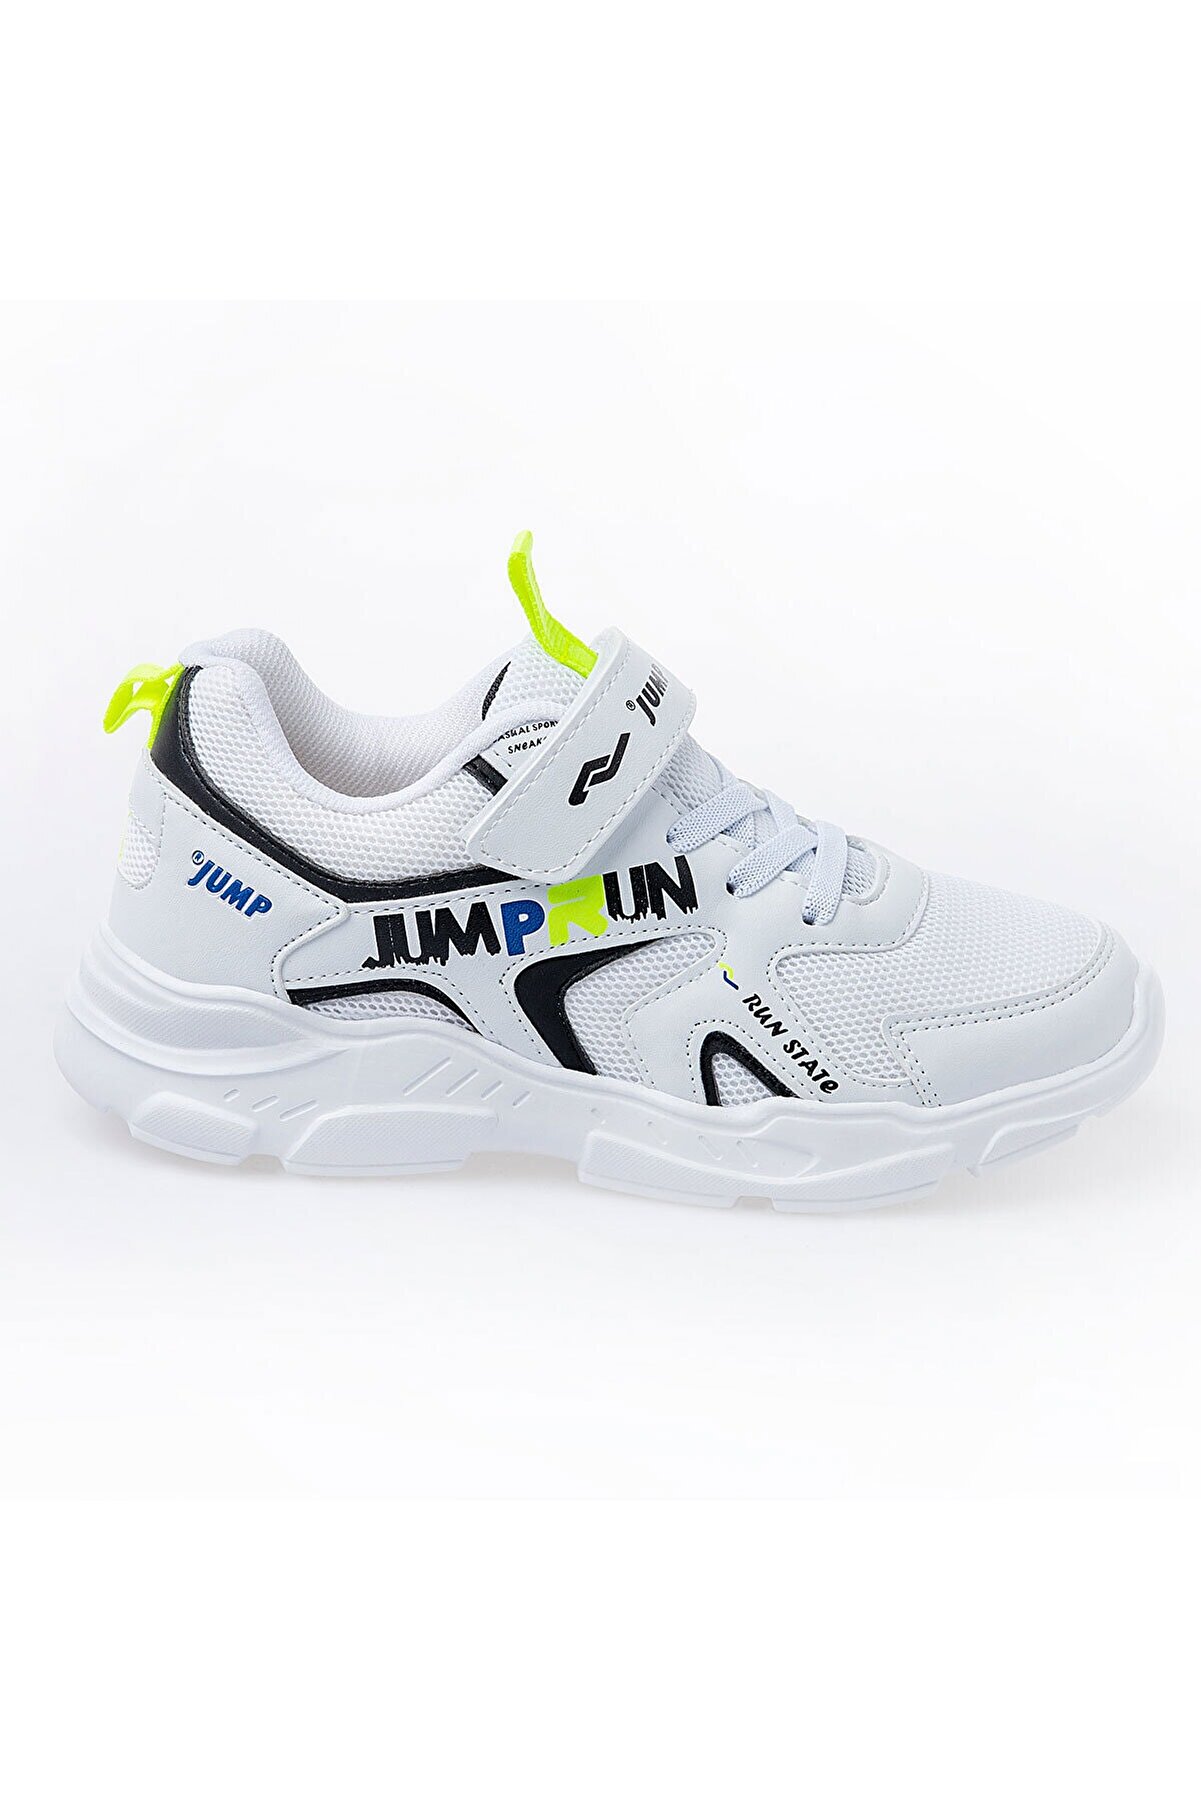 Jump 24747 Beyaz - Siyah Uniseks Çocuk Spor Ayakkabı